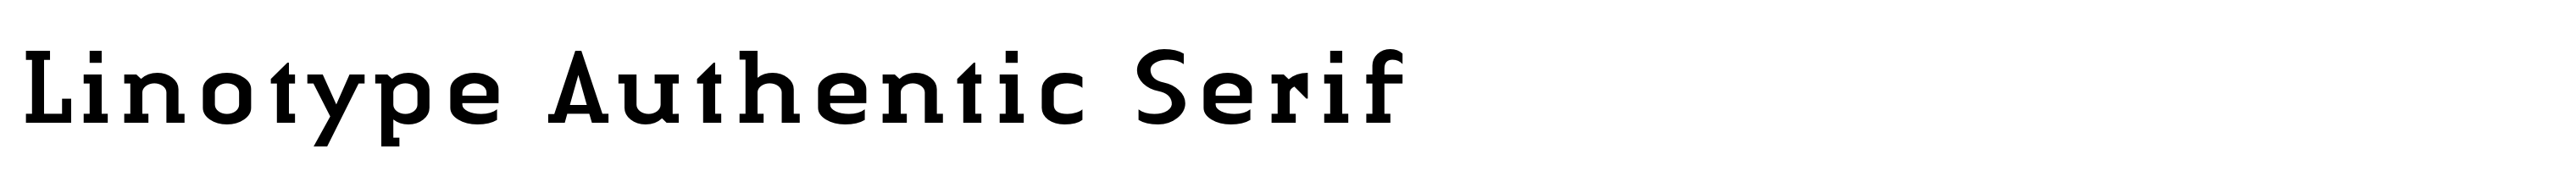 Linotype Authentic Serif